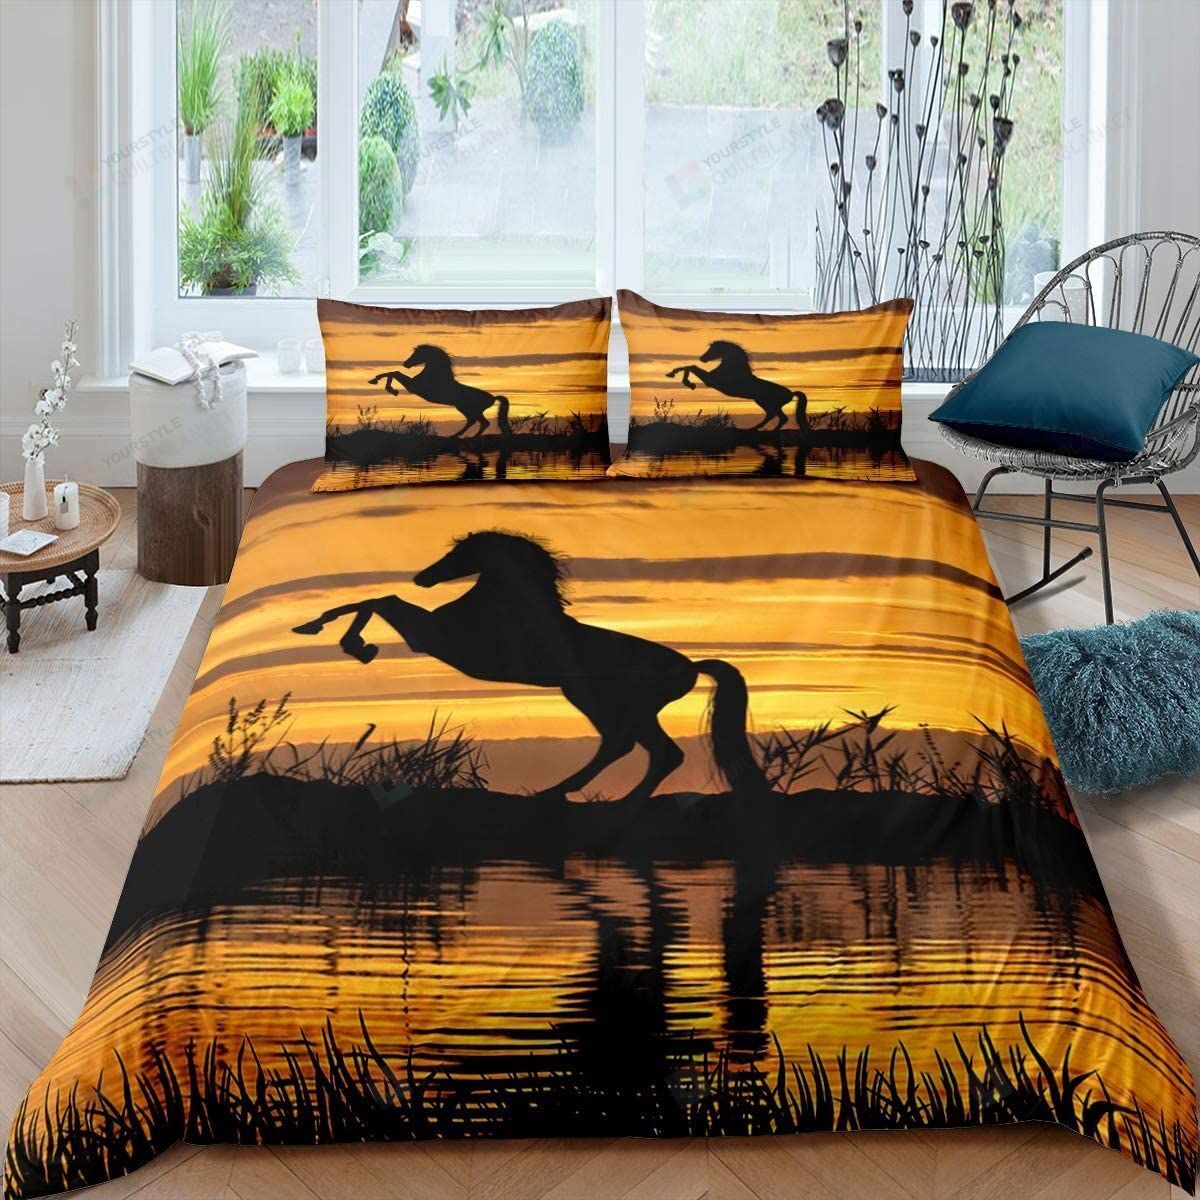 Horse Sunset Bedding Set Bed Sheet Spread Comforter Duvet Cover Bedding Sets